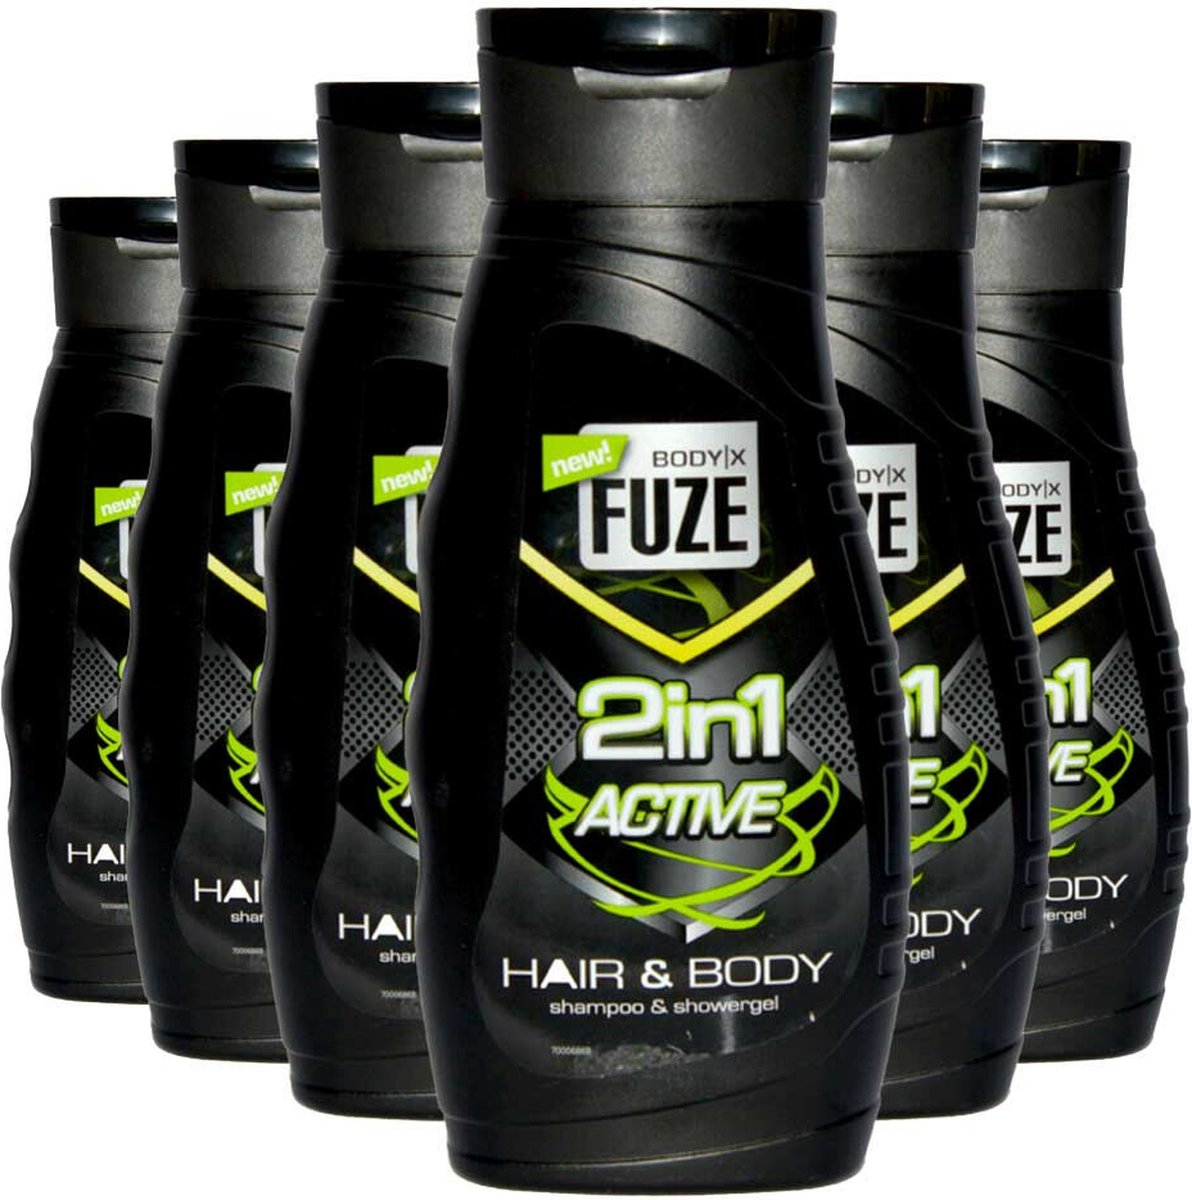 Body-X Fuze Douchegel Hair & Body Active - 6 x 300 ml - Voordeelverpakking